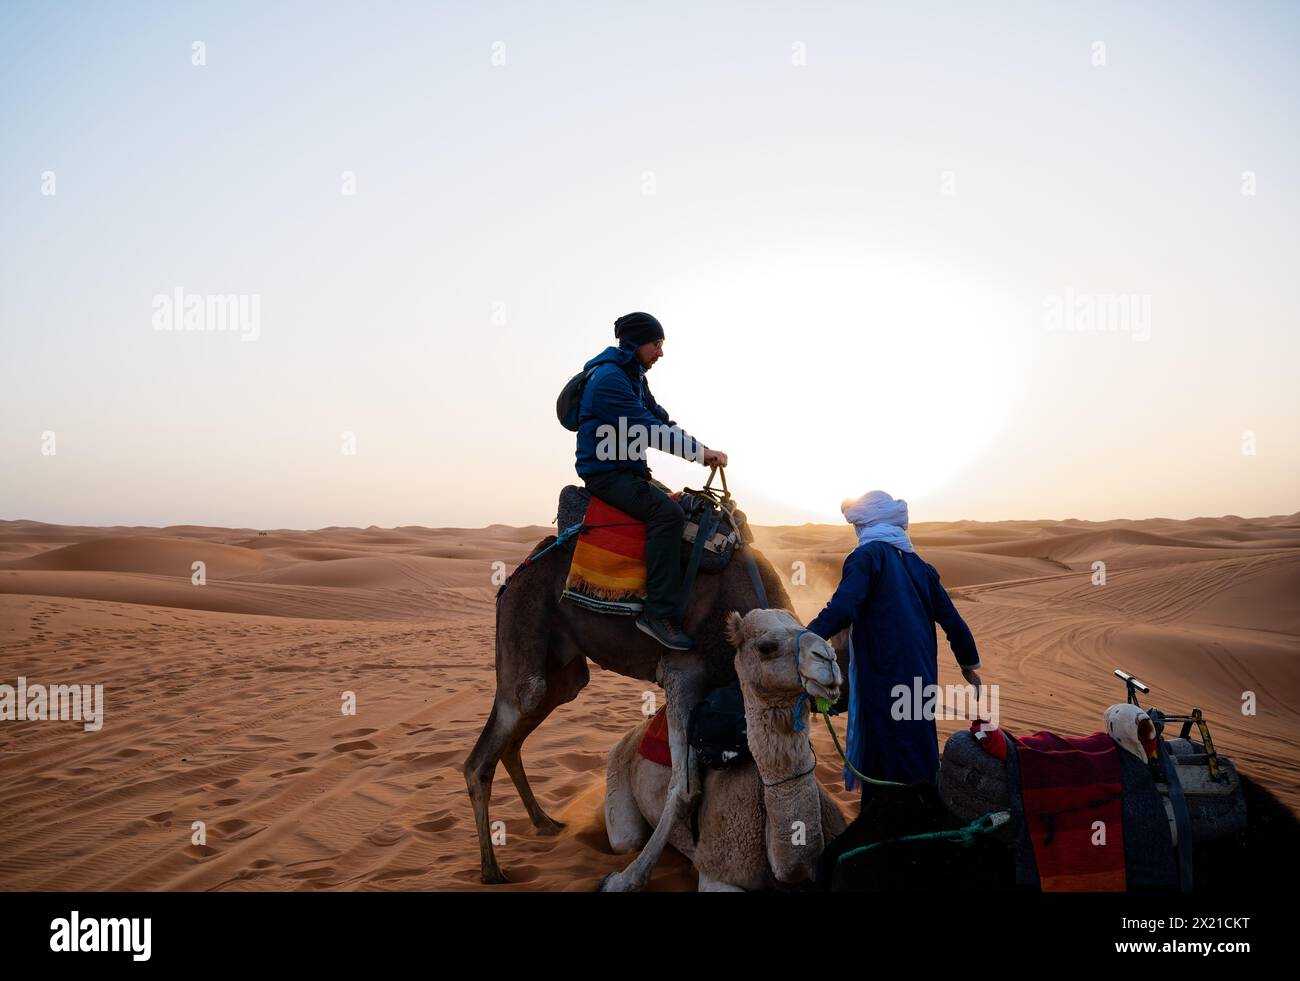 Ein Tourist mittleren Alters sitzt auf einem Dromedar und versucht, ein weiteres ruhendes Kamel zu besteigen, während ein ruhiger Handler gegen einen blendenden Sonnenaufgang eingreift. Stockfoto